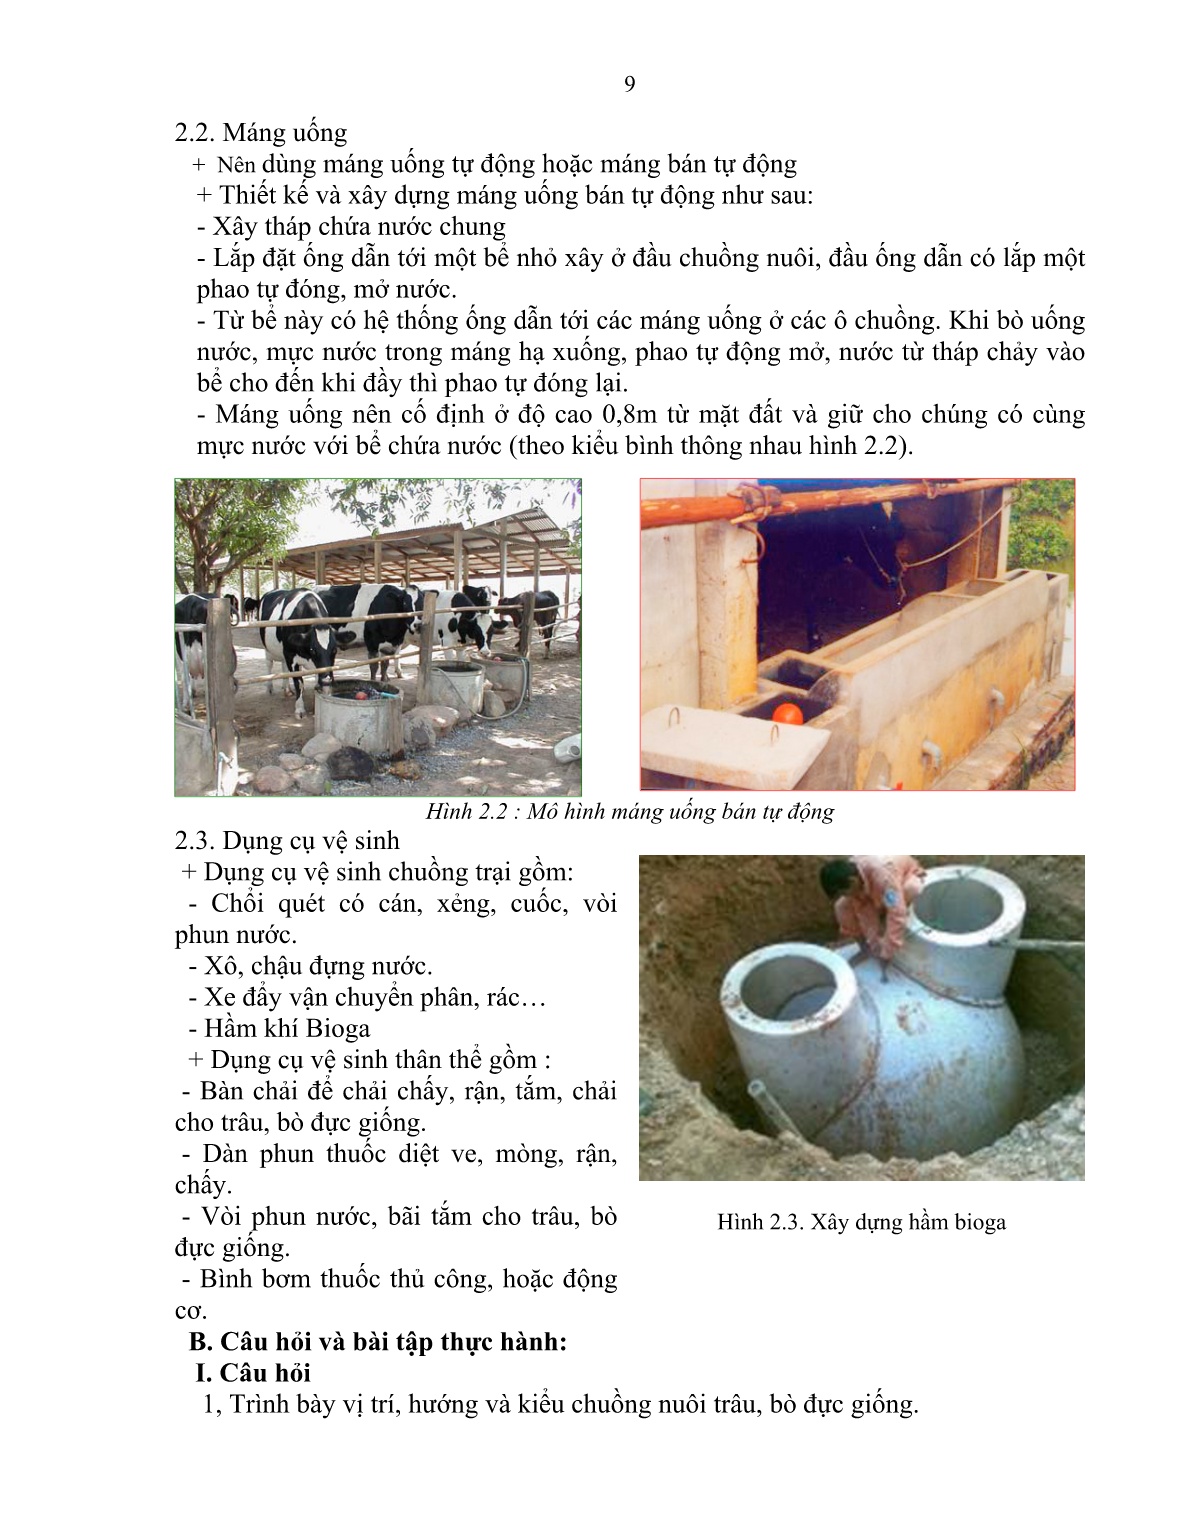 Giáo trình mô đun Nuôi trâu, bò đực giống (Trình độ: Sơ cấp nghề) trang 10